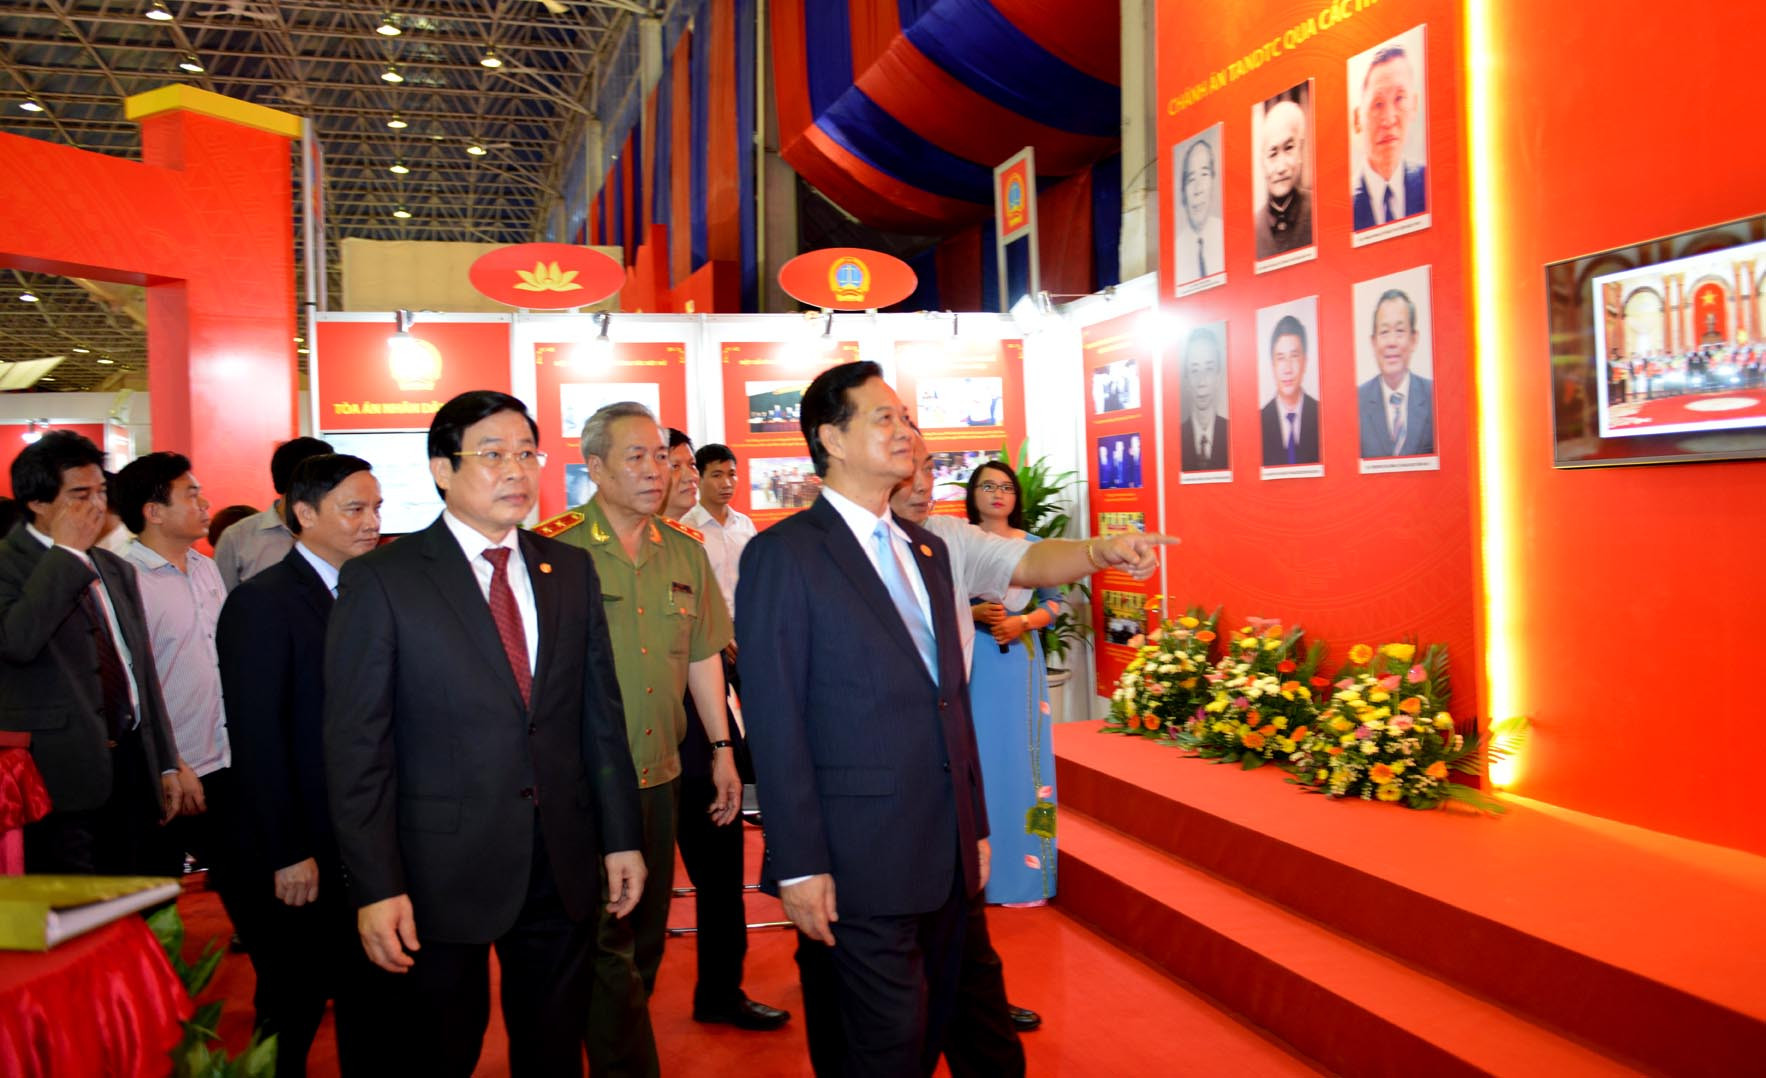 Thủ tướng thăm gian trưng bày của Tòa án nhân dân tại Triển lãm Thành tựu kinh tế - xã hội 2015